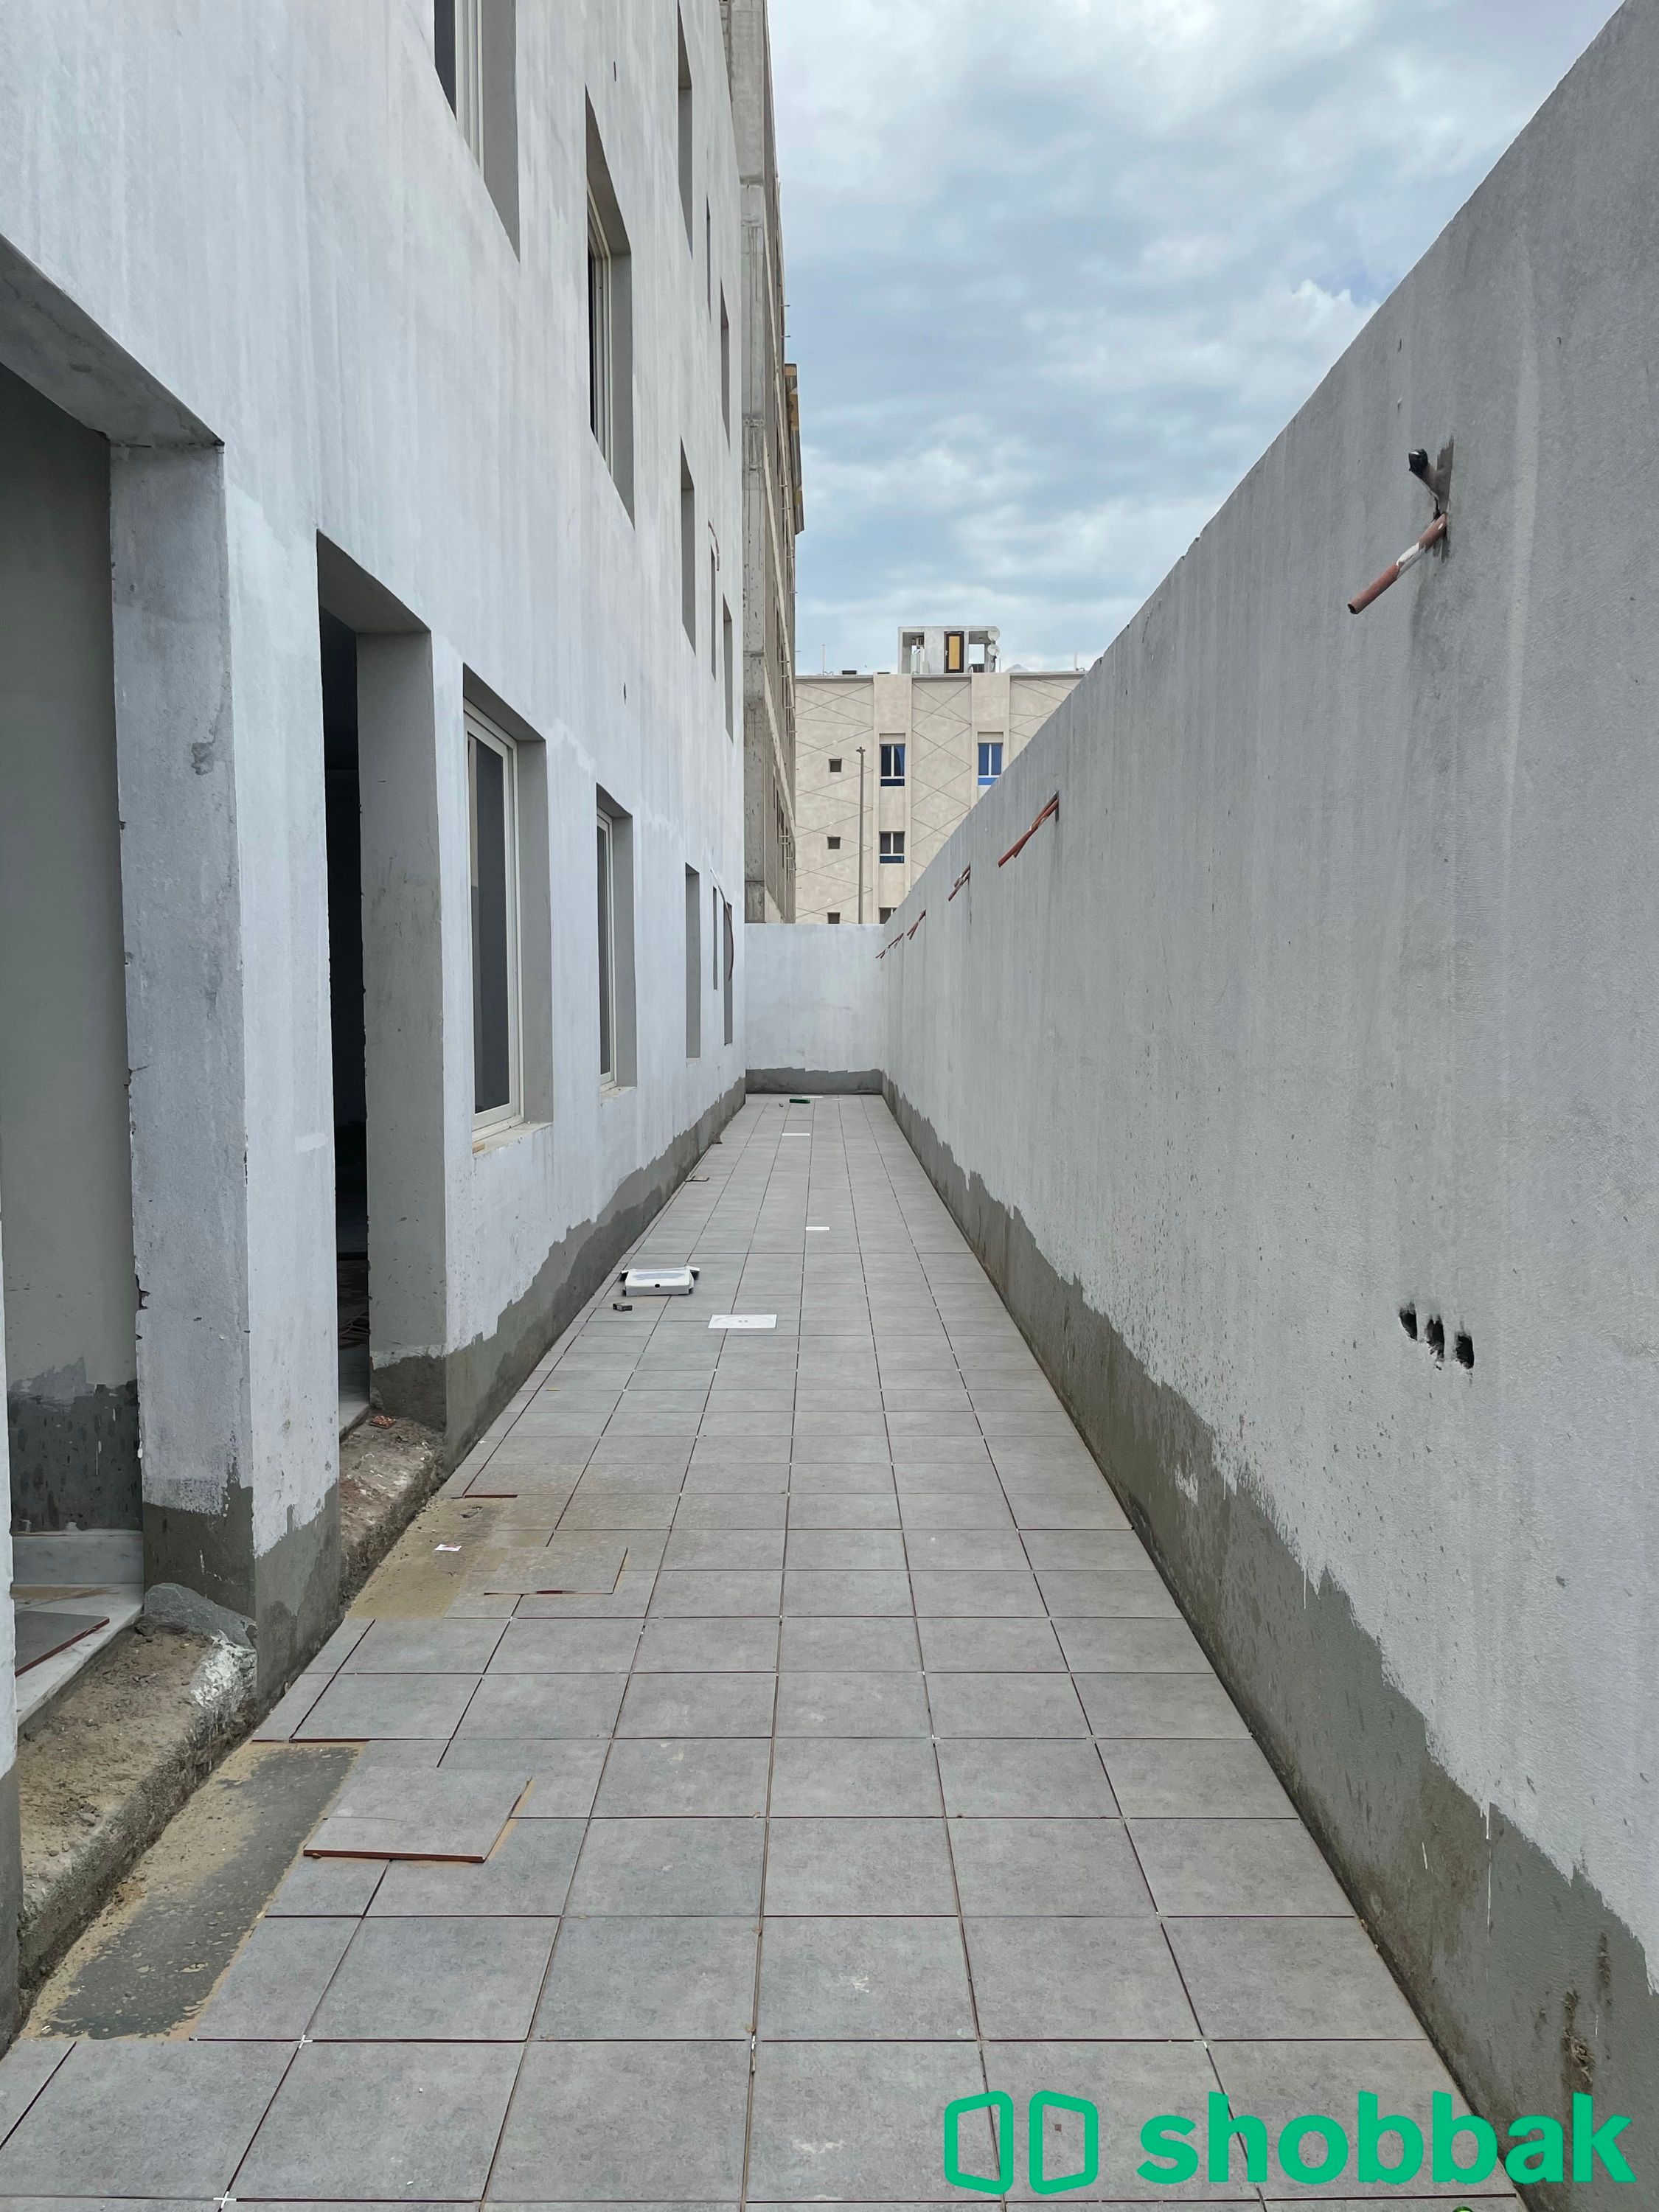 عمارة رقم (1) شقة رقم (1) للبيع بحي الجوهرة-الدمام. Shobbak Saudi Arabia